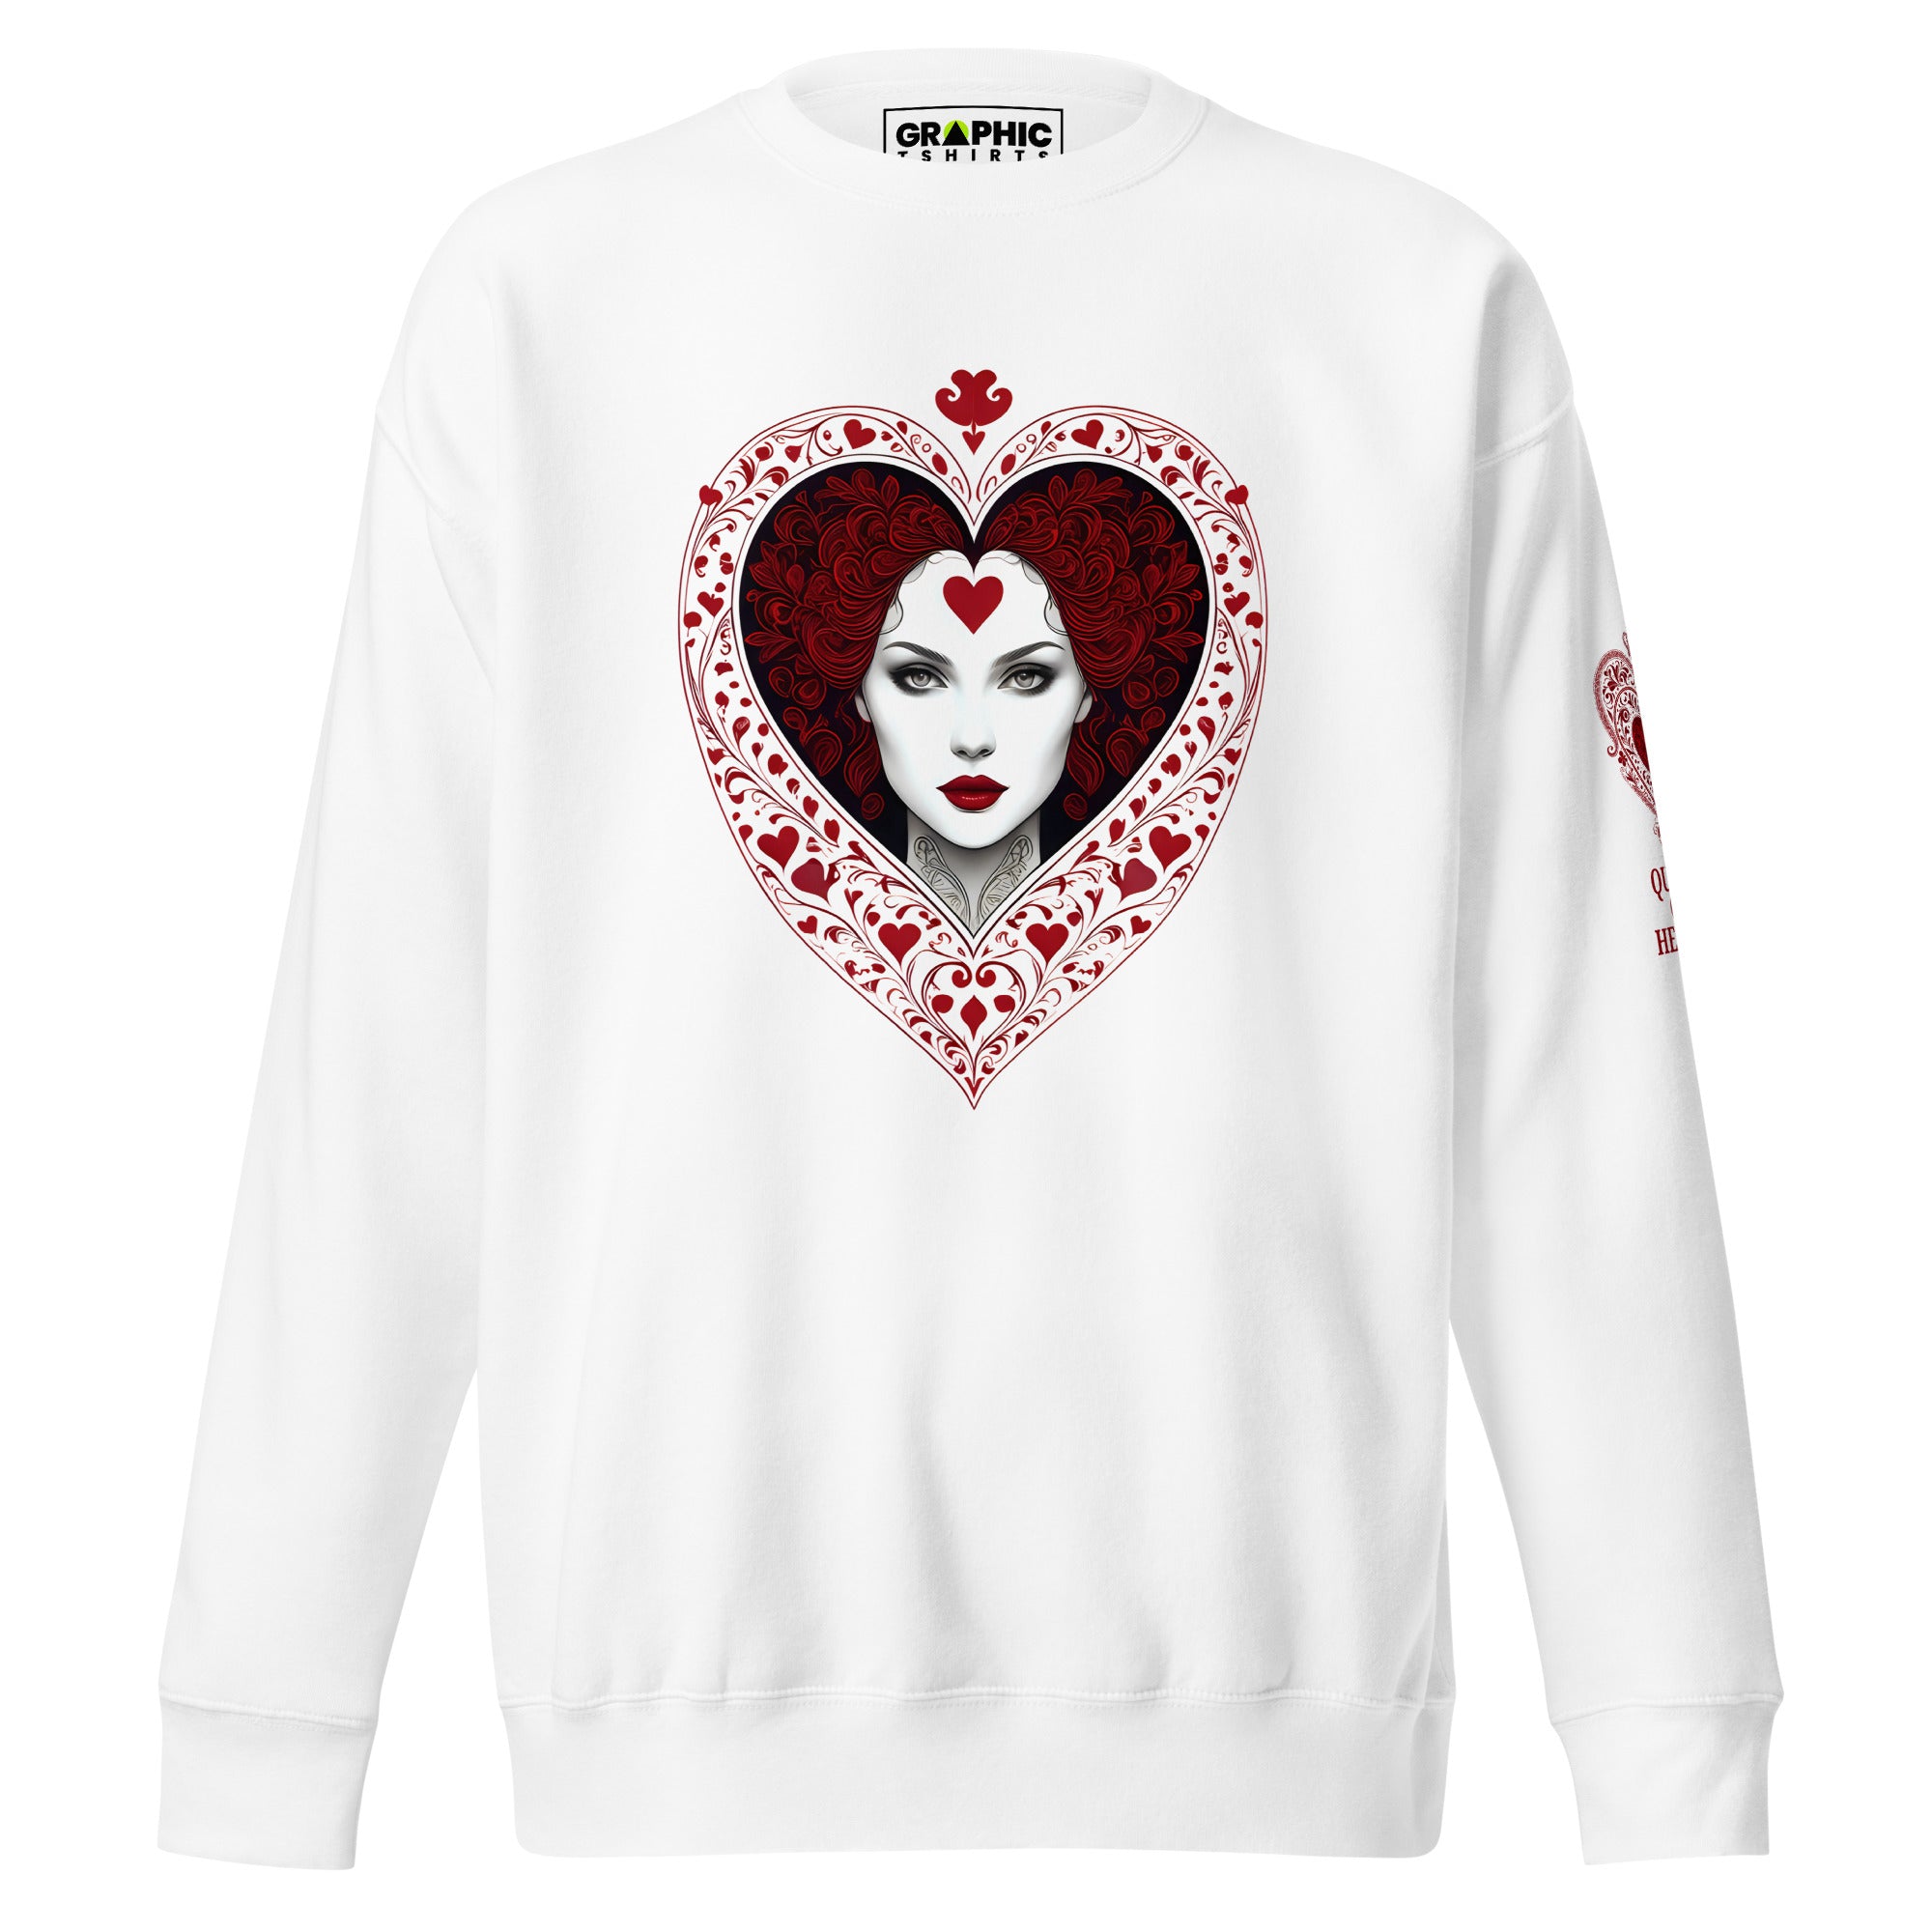 Unisex Premium Sweatshirt - Queen Of Hearts Series v.24